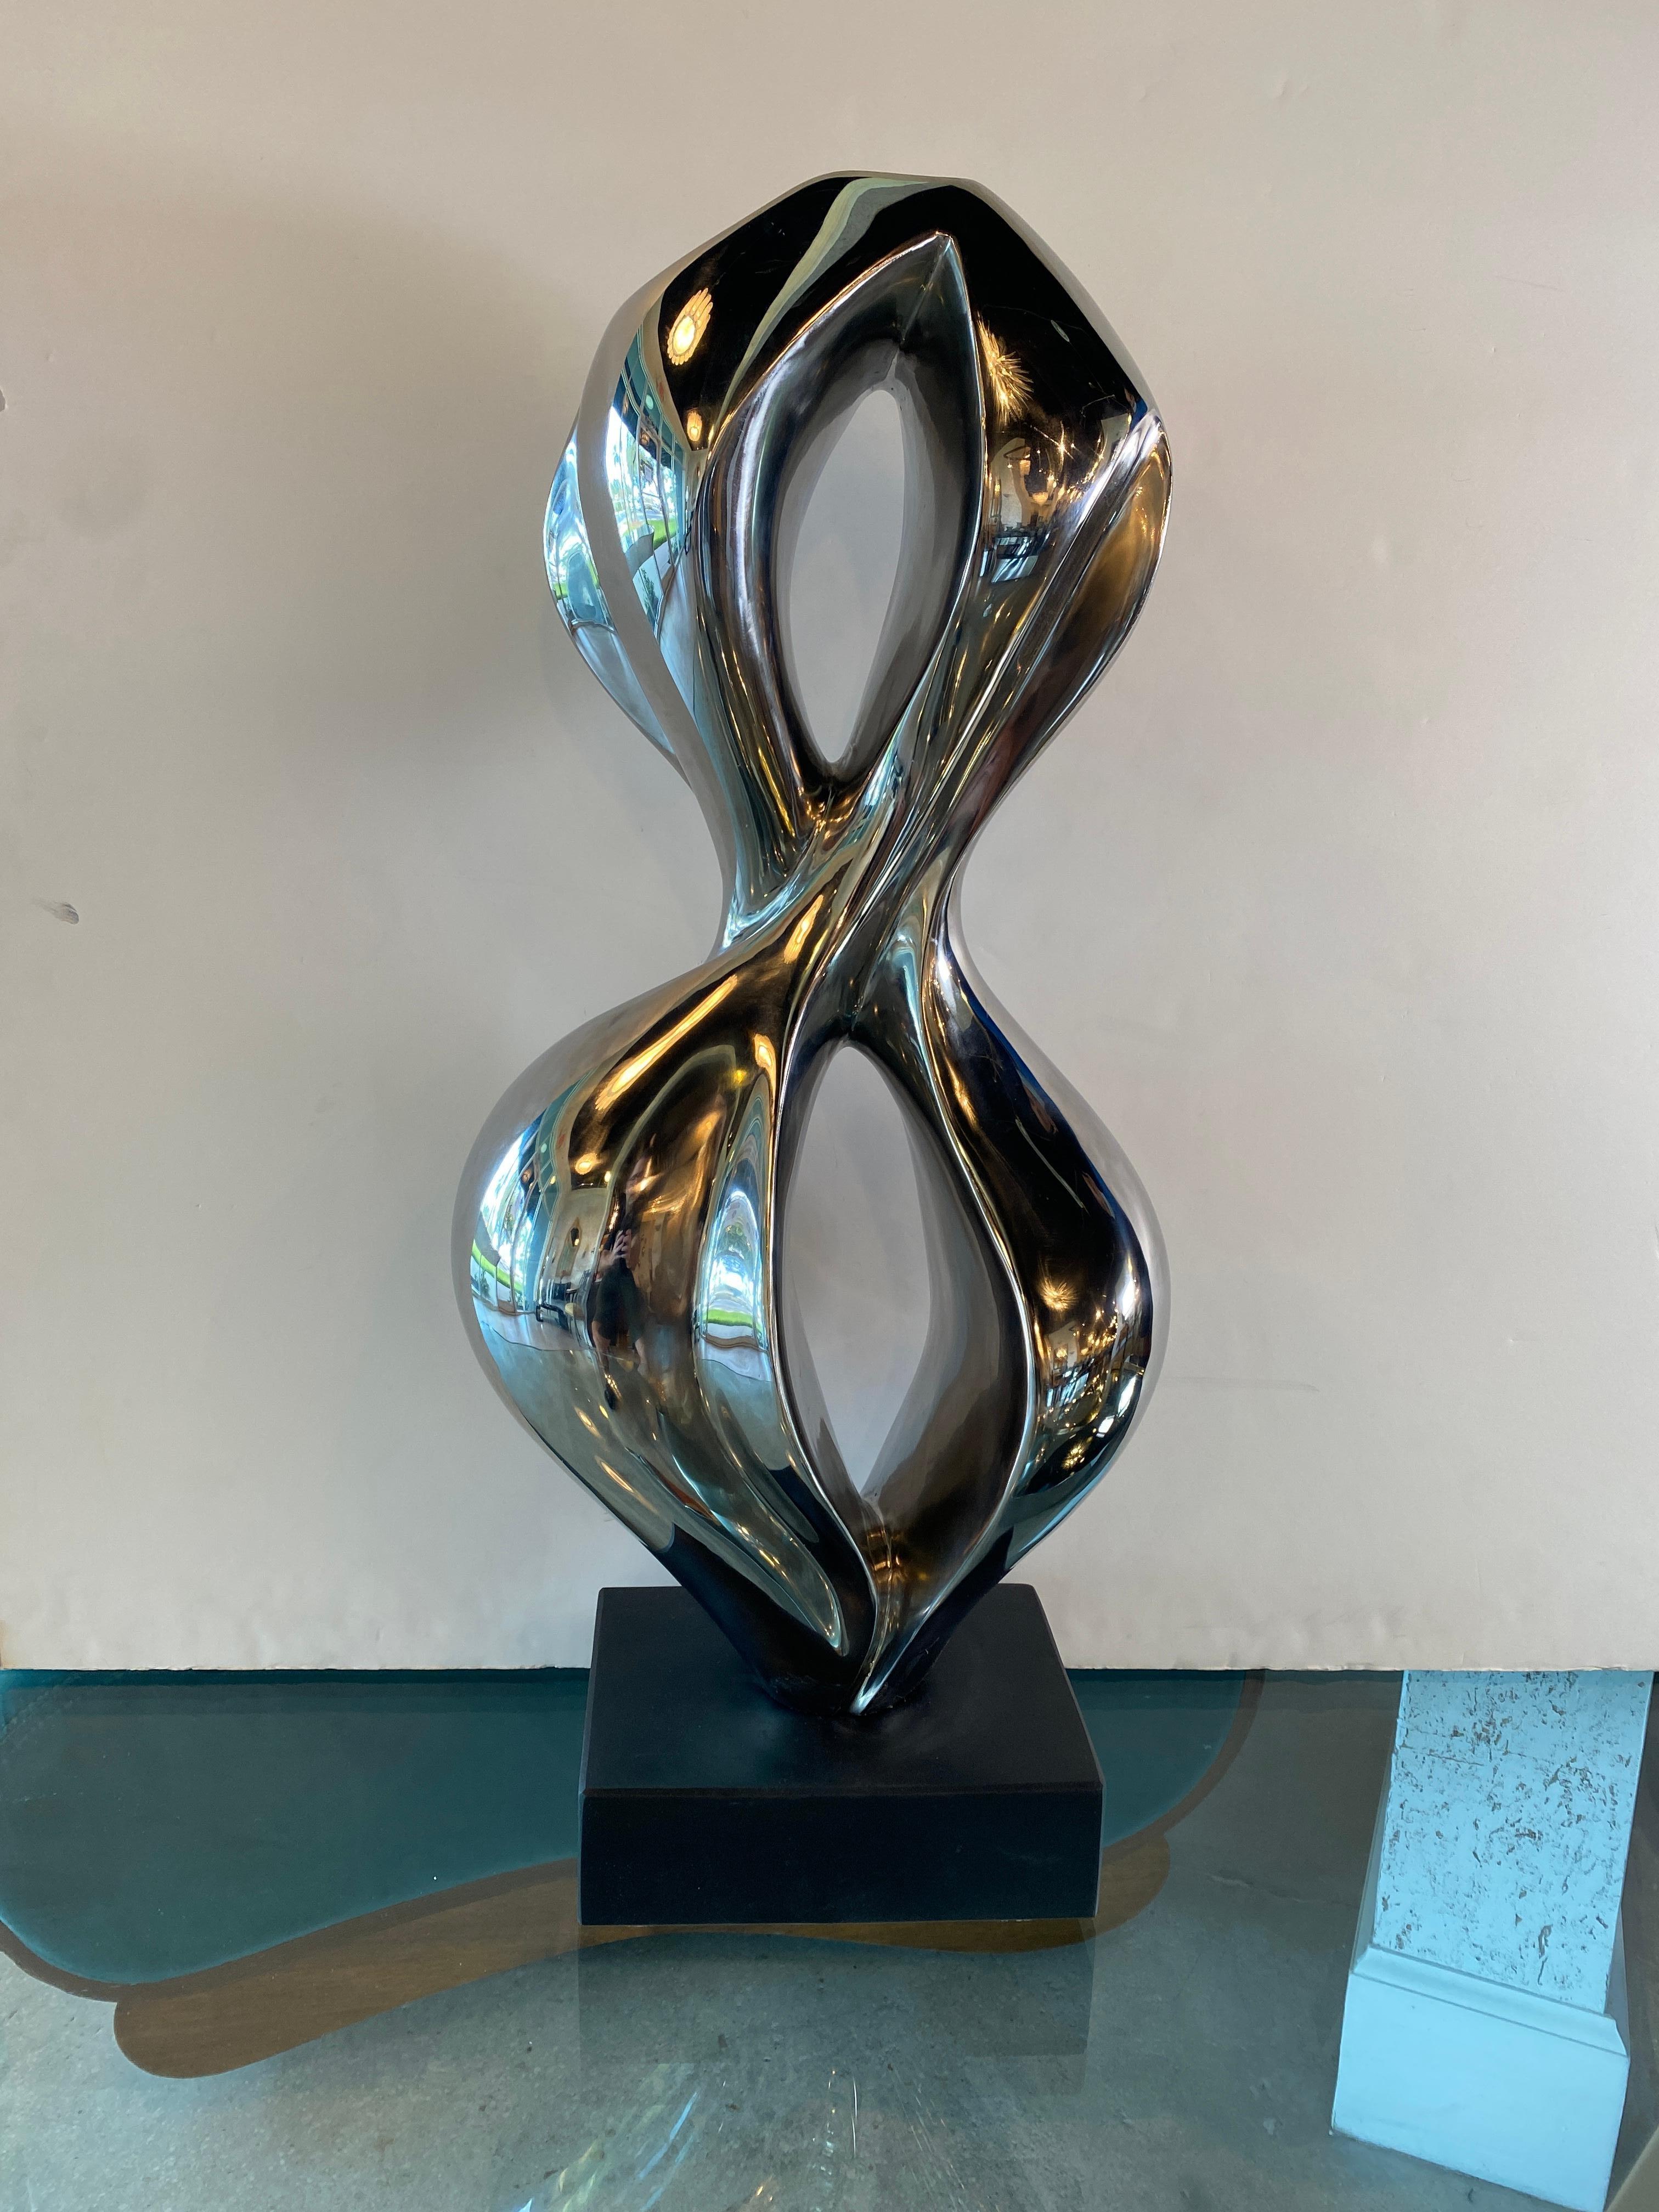 DANA, Abstrakte Skulptur aus Edelstahl der Schweizer Moderne, Evelyne Brader-Frank. Dana ist eine keltische Fluss- oder Wassergöttin. Dana bedeutet Geschenk und Gegenwart.

Evelyne Brader-Frank wurde 1970 in Wettingen, Schweiz, in eine